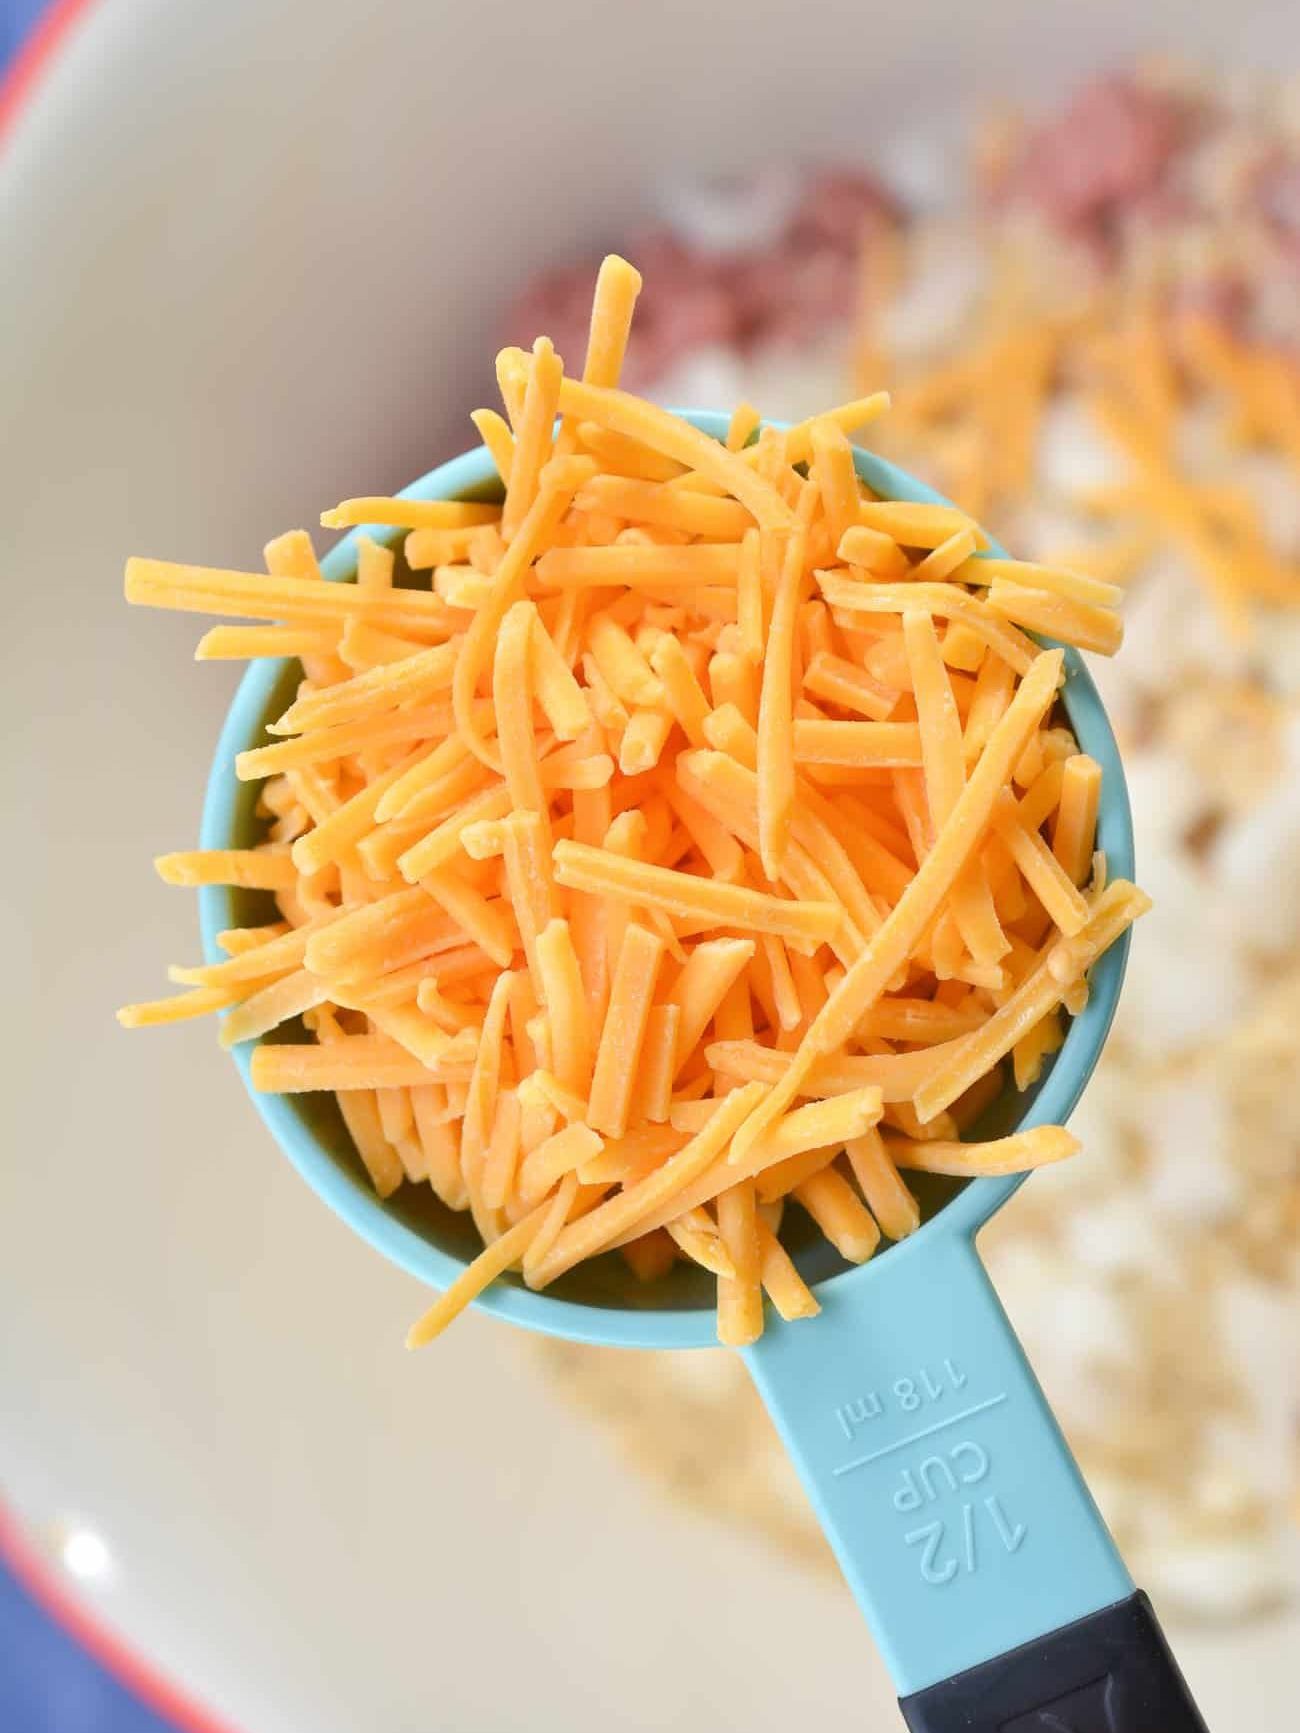 add ½ cup of shredded cheddar cheese.